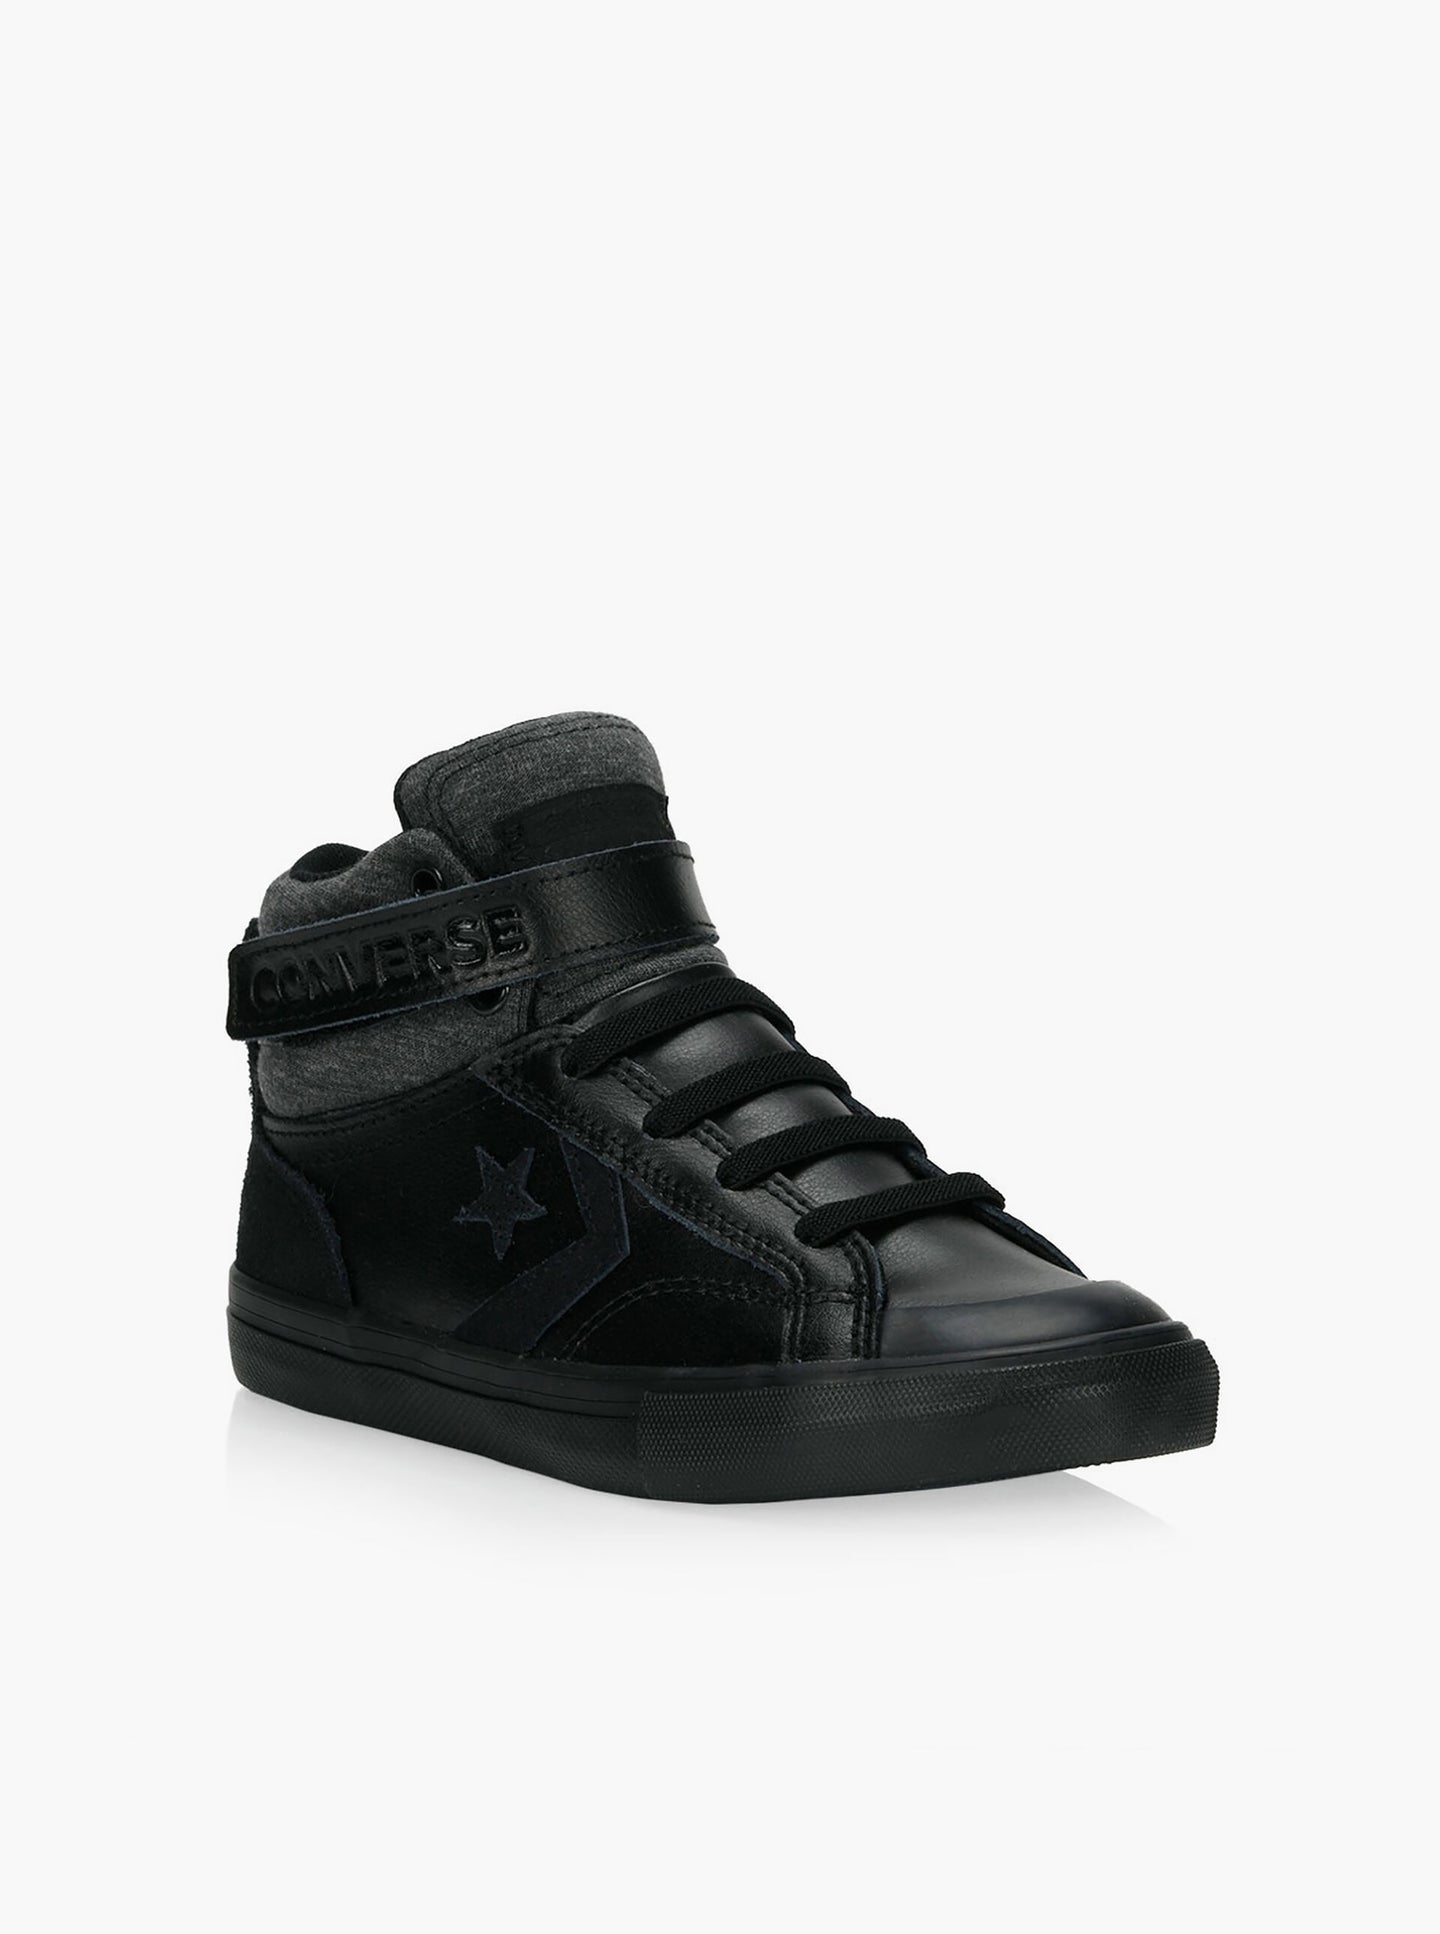 [US2] Converse Pro Blaze Strap Hi Sneaker in Black BNWT -  in box